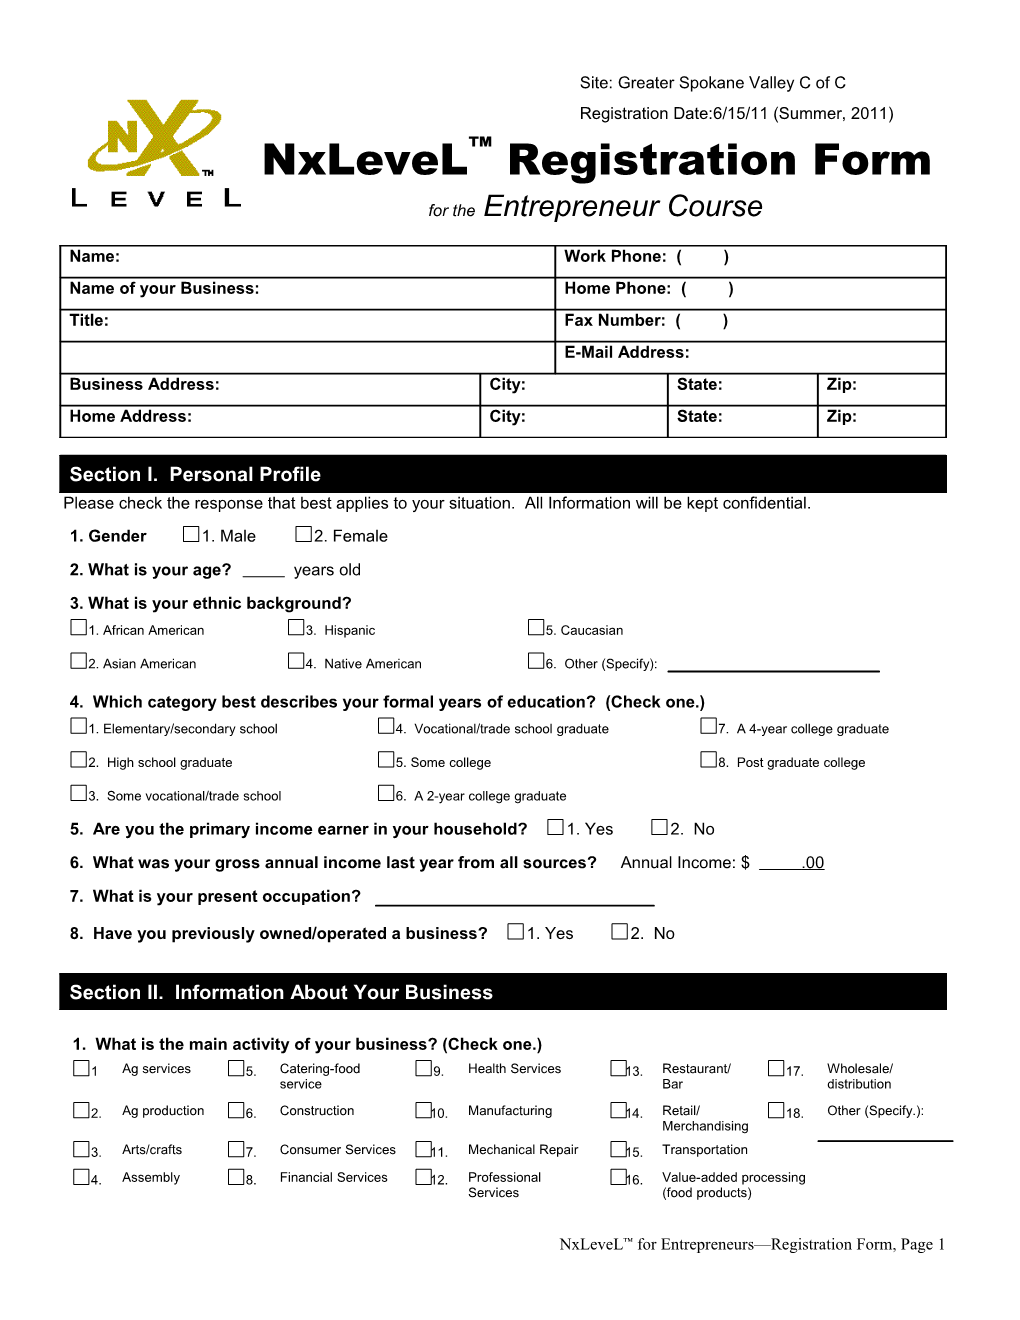 Nxlevel Registration Form for the Entrepreneur Course